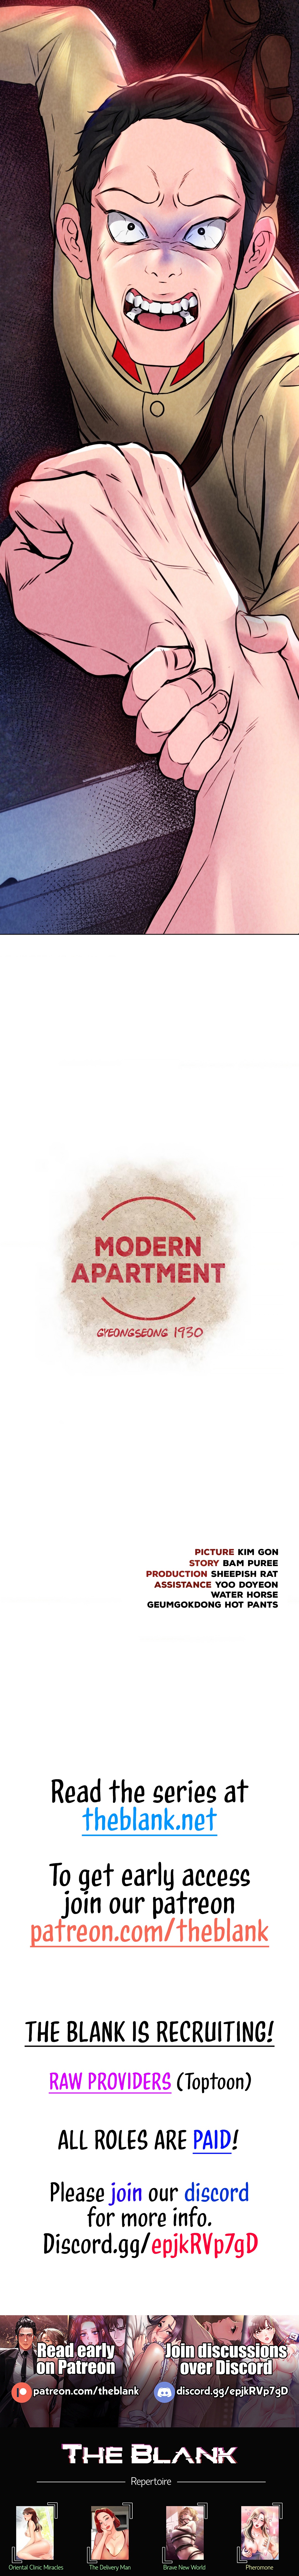 Read manhwa Modern Apartment, Gyeongseong 1930 Chapter 7 - SauceManhwa.com